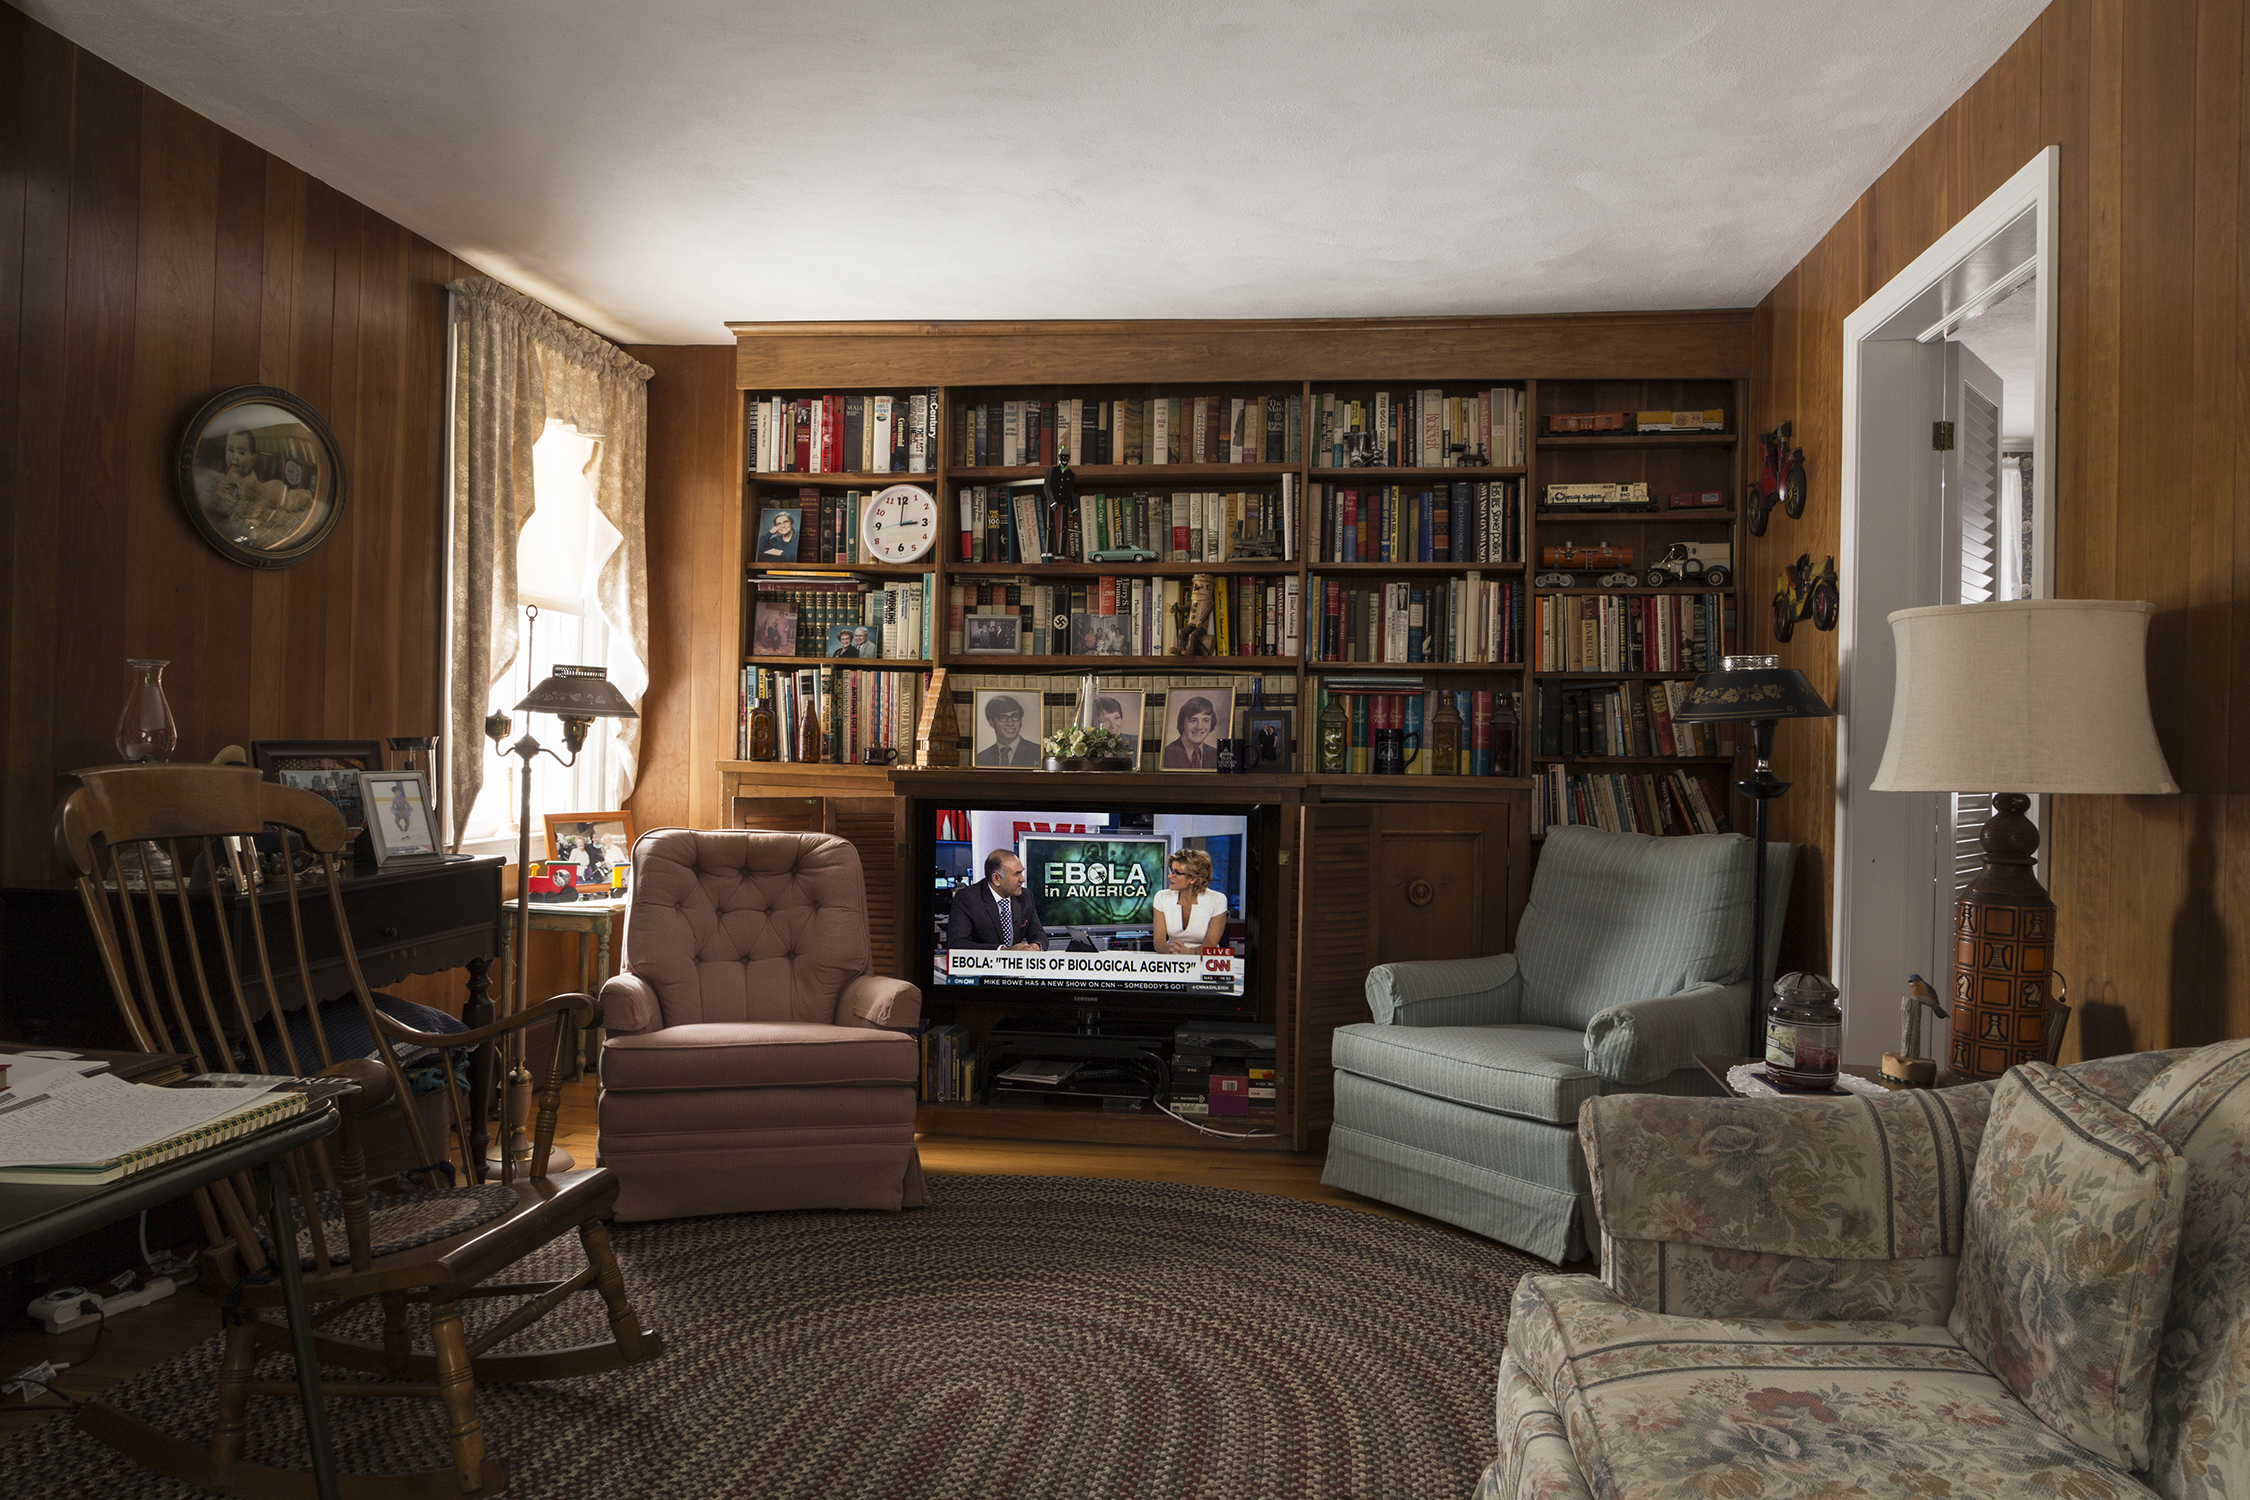 Grandma's TV Room, October 2014.jpg